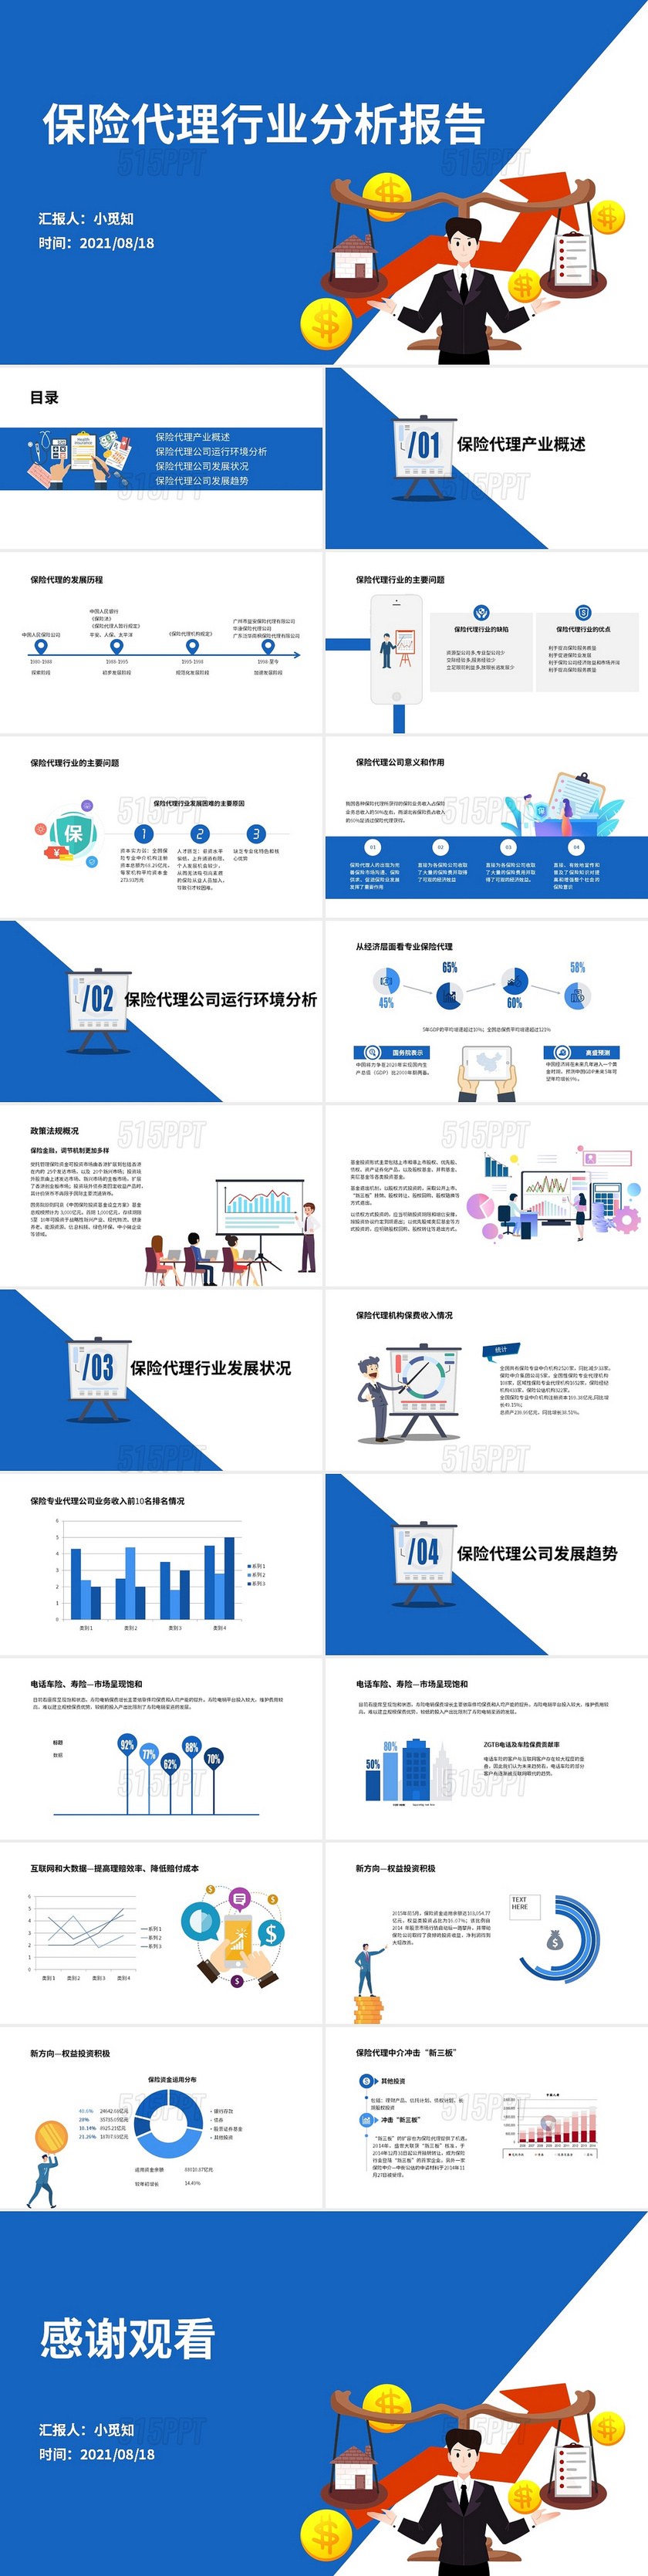 蓝色卡通简约商务保险代理行业分析报告PPT模板